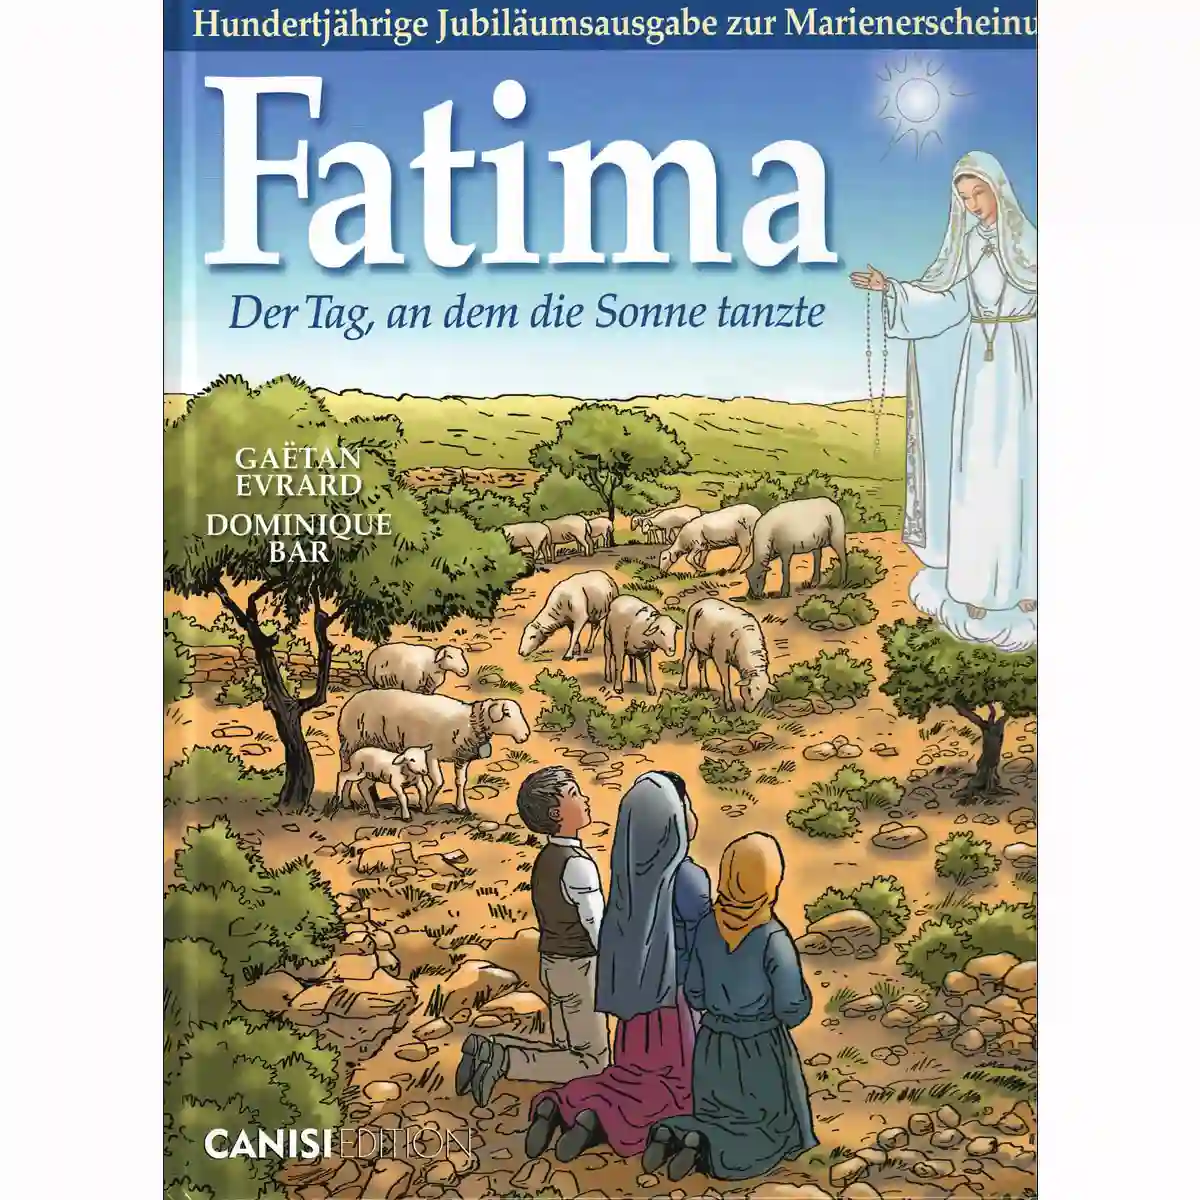 Fatima Der Tag an dem die Sonne tanzte